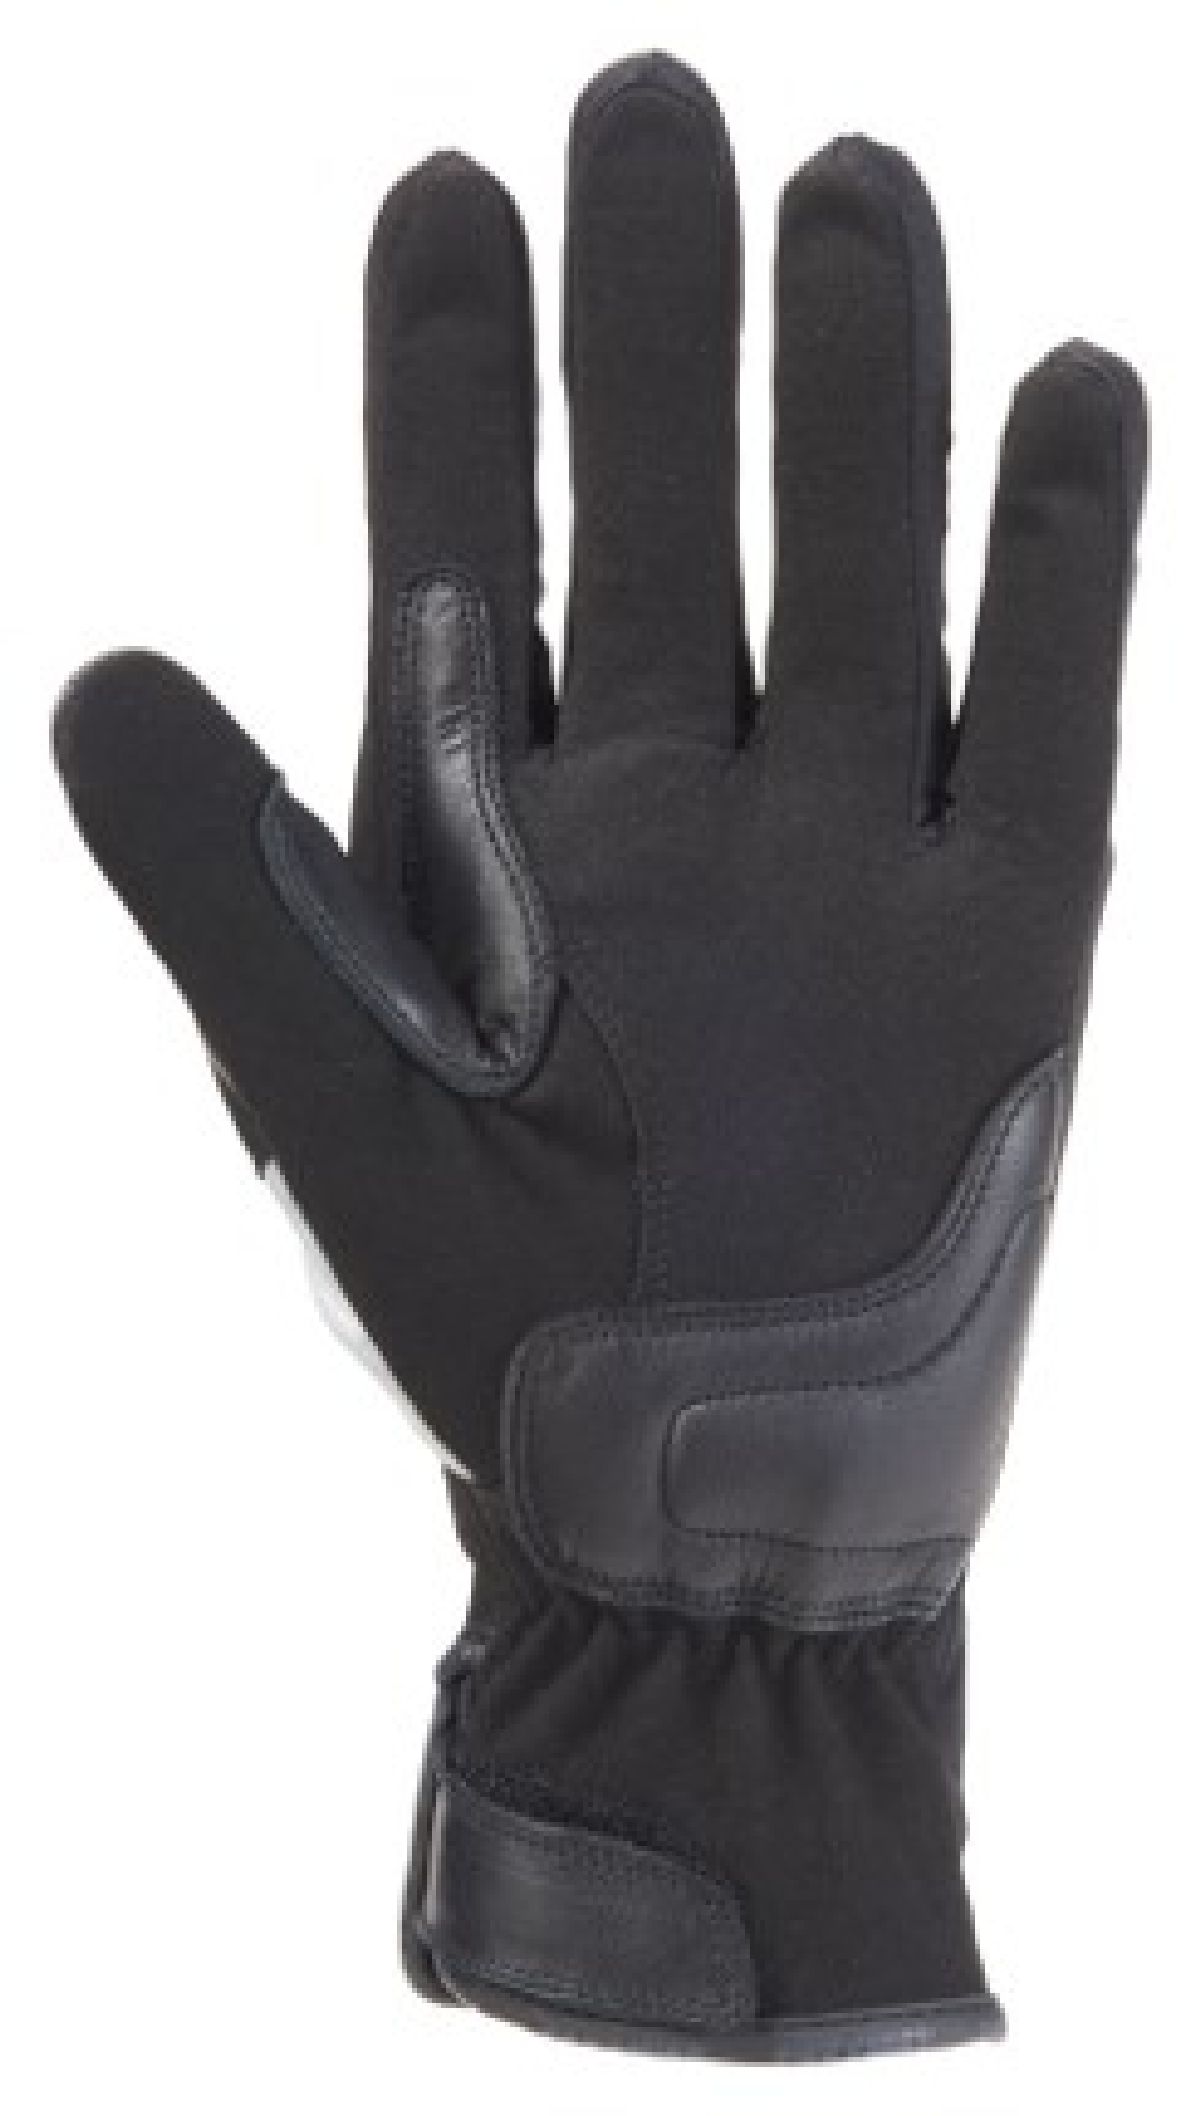 Easy II gants Noir/Gris S